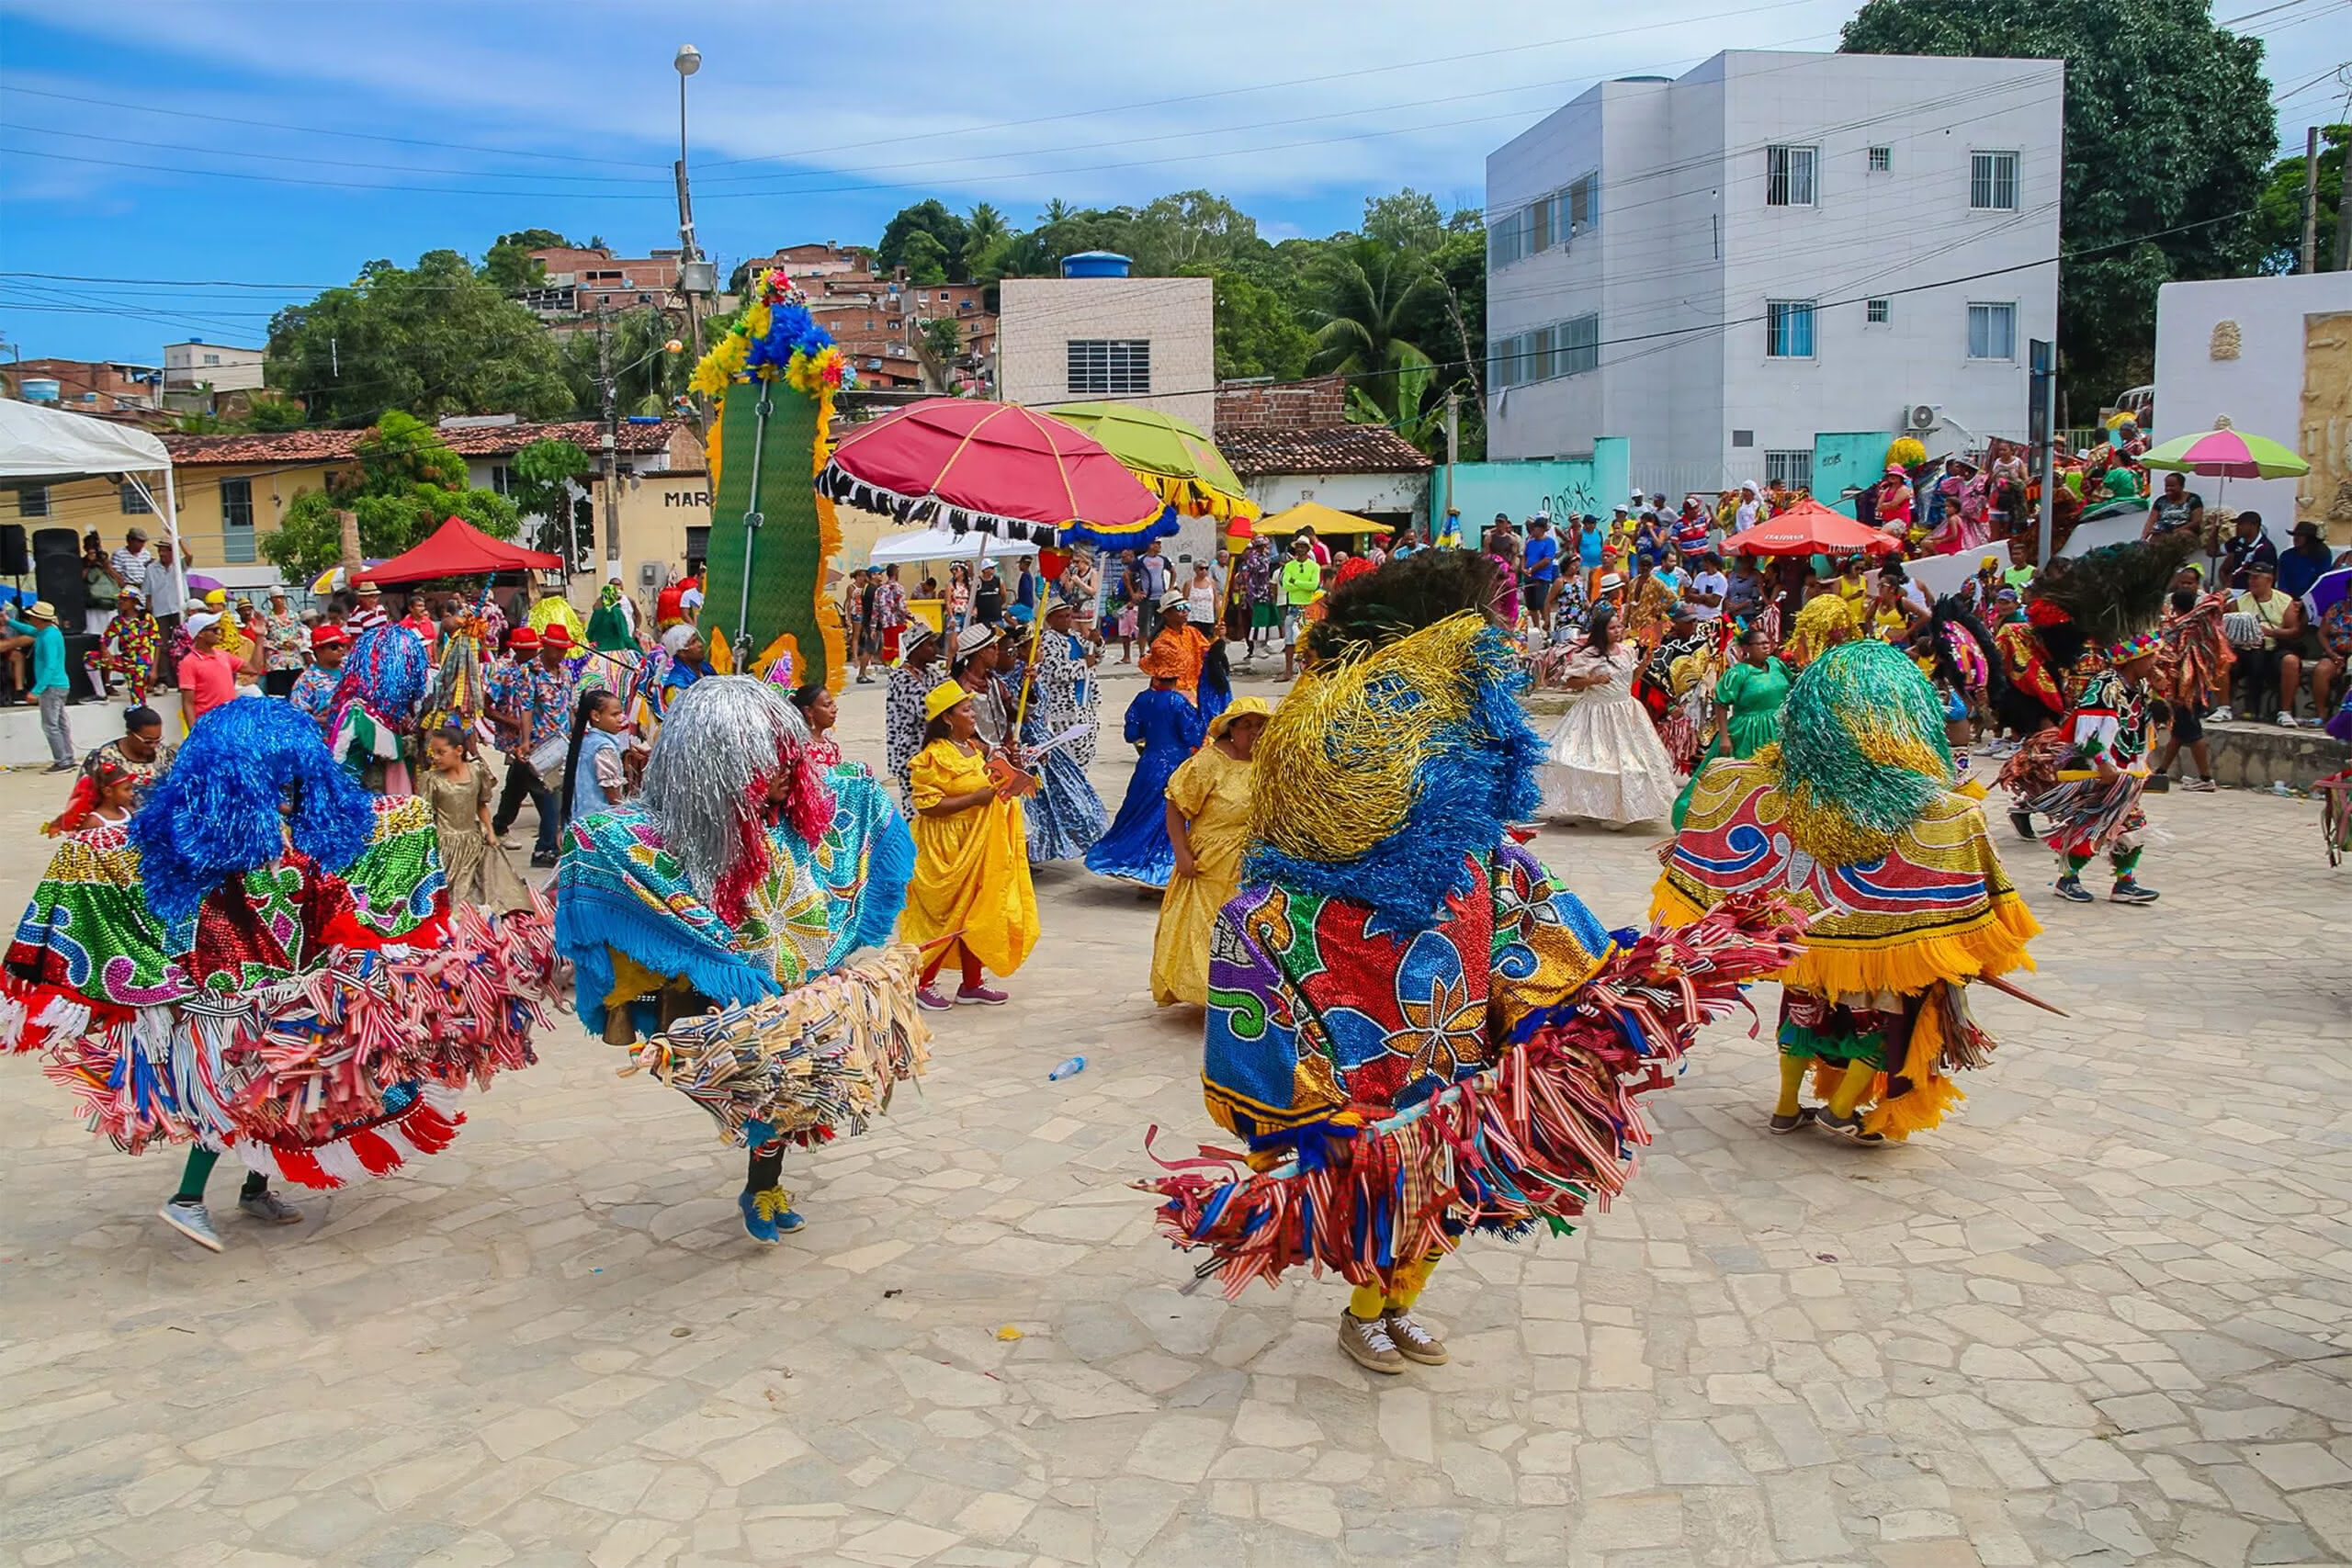 Carnaval 2021 CANCELADO em Pernambuco? Confira a decisão do governo